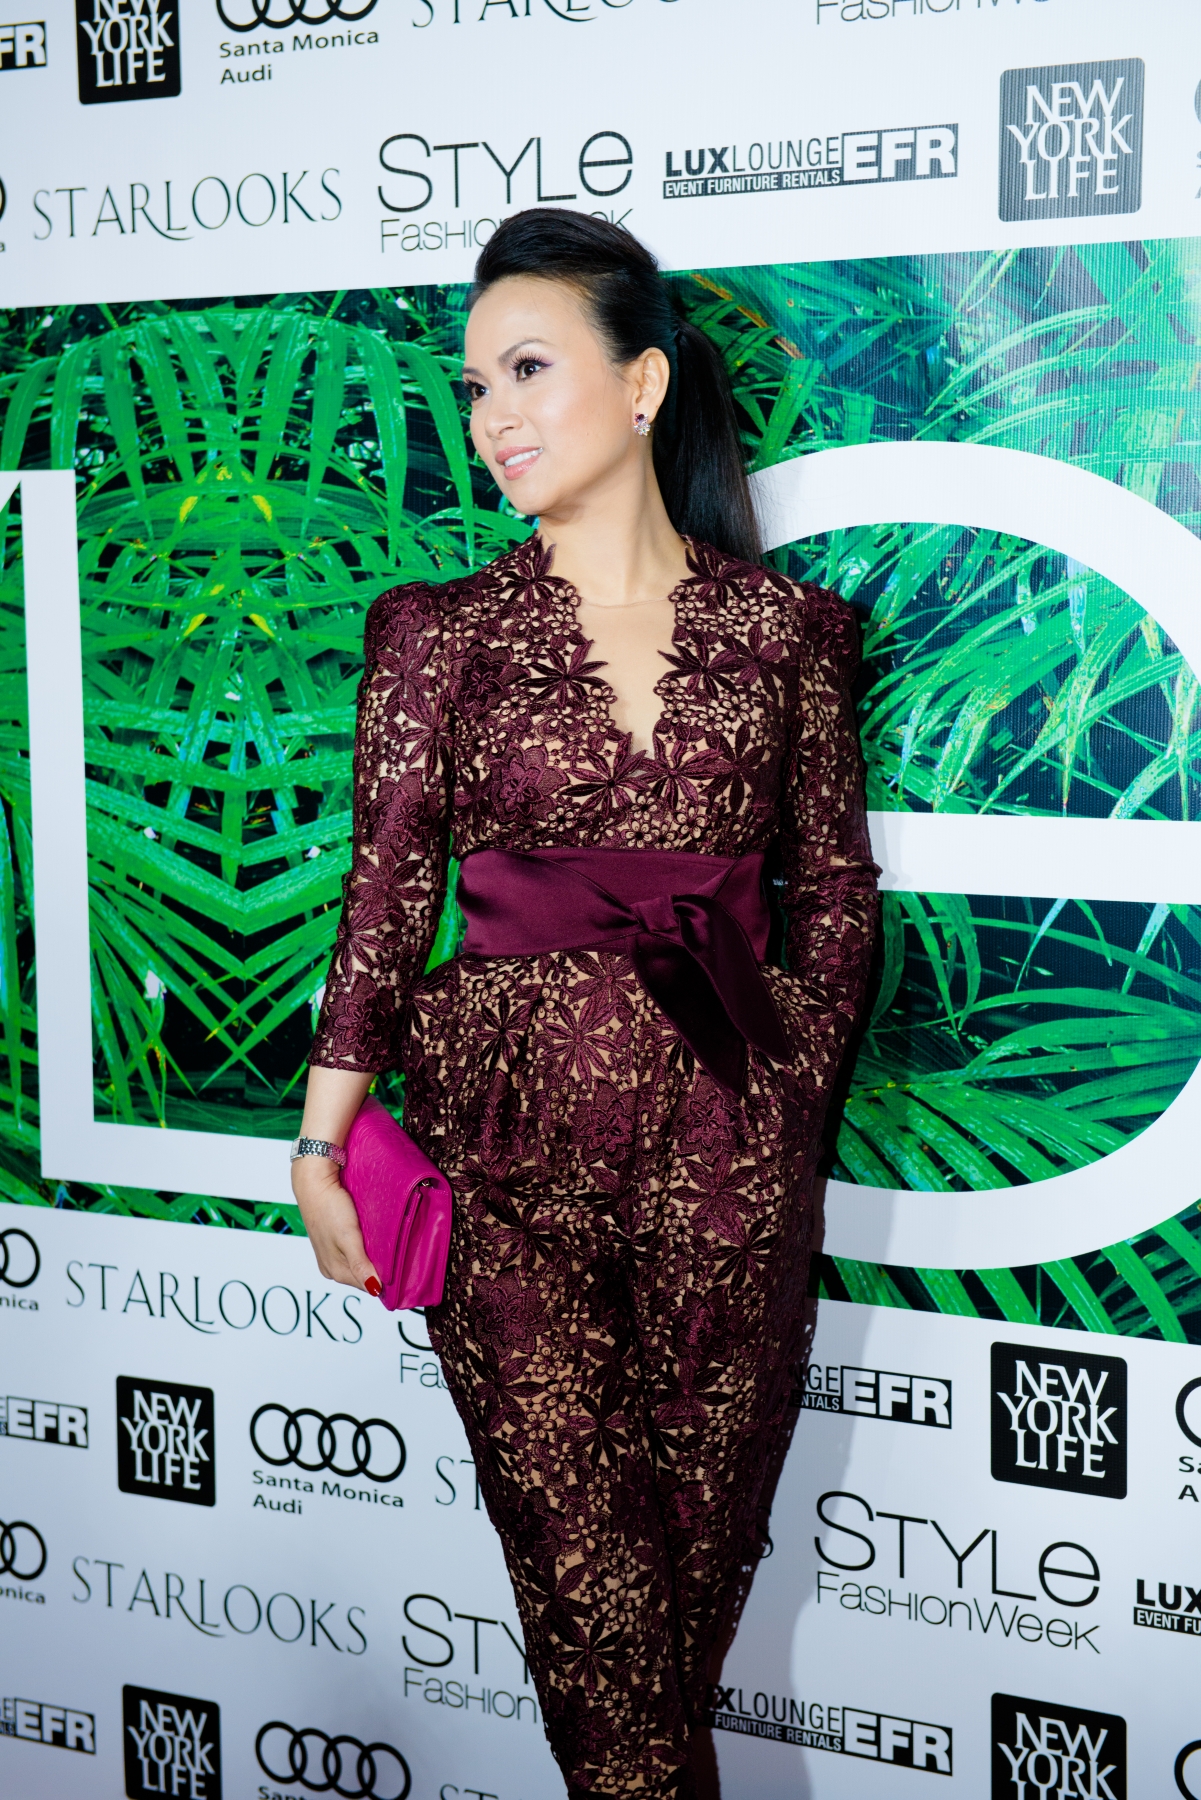 Ha Phuong at LA fashion week 2015.